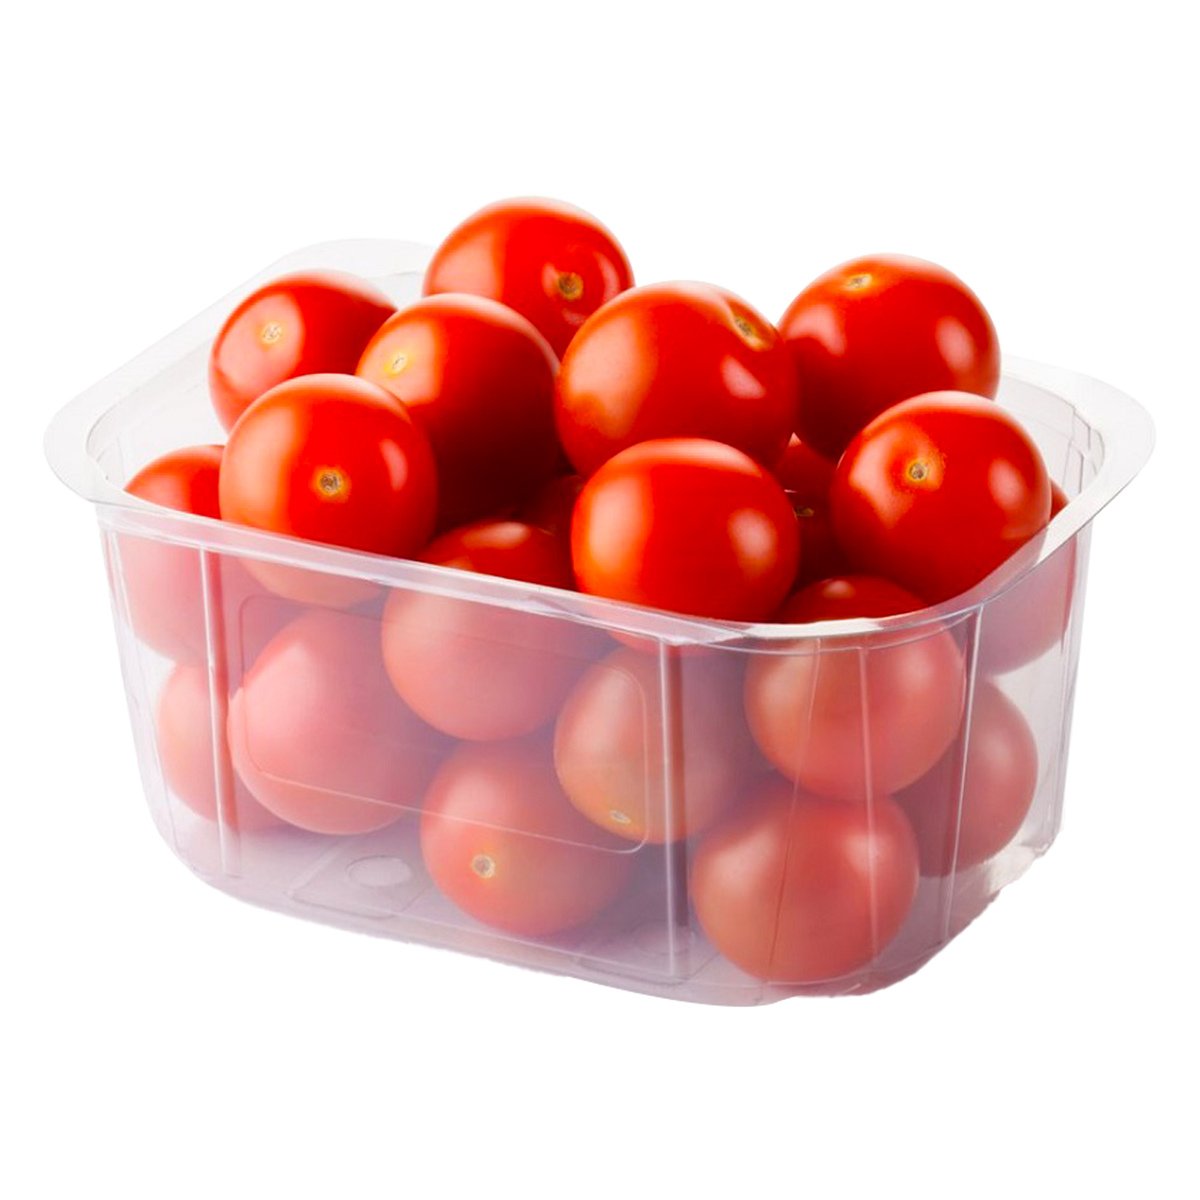 Tomato Cherry Red Morocco 1 pkt